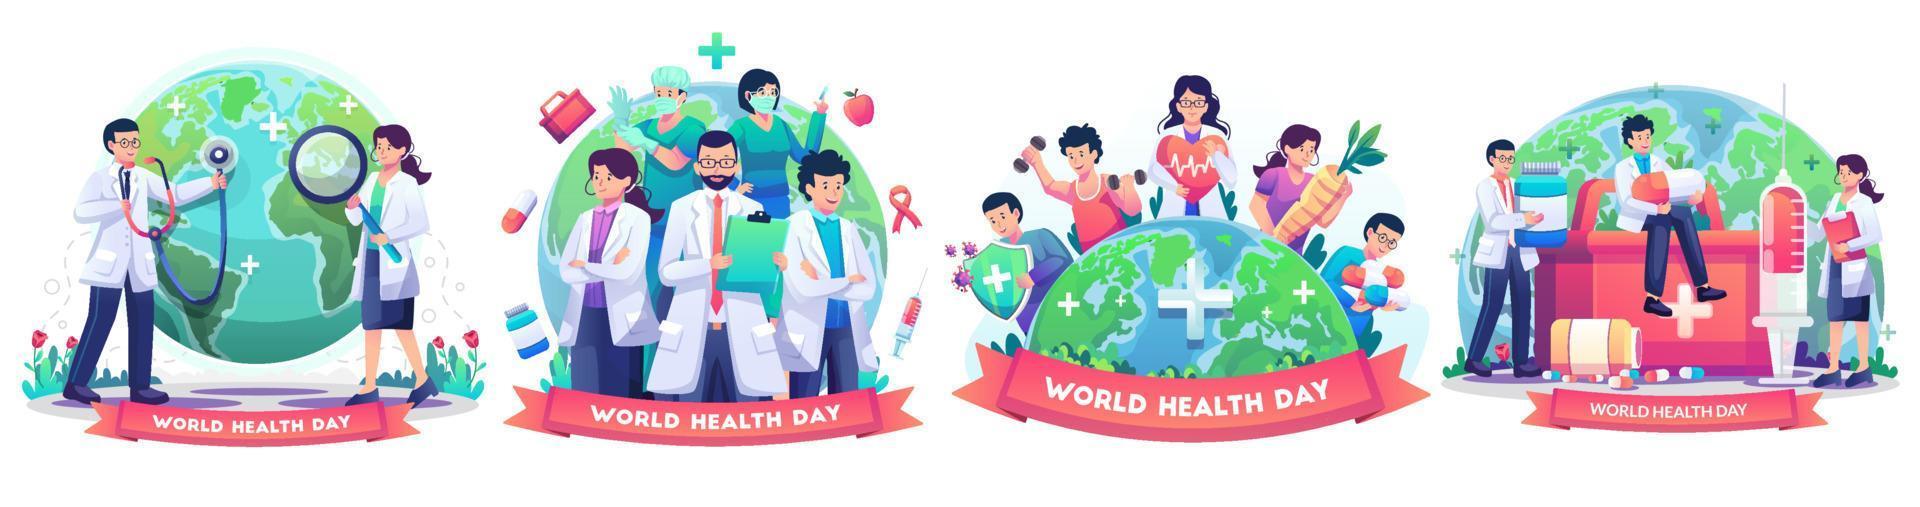 Satz des Konzepts des Weltgesundheitstags mit einer Gruppe von Ärzten und Krankenschwestern, Menschen, die gesunde Aktivitäten leben, Personen, die joggen, Radfahren, Yoga. Vektor-Illustration vektor